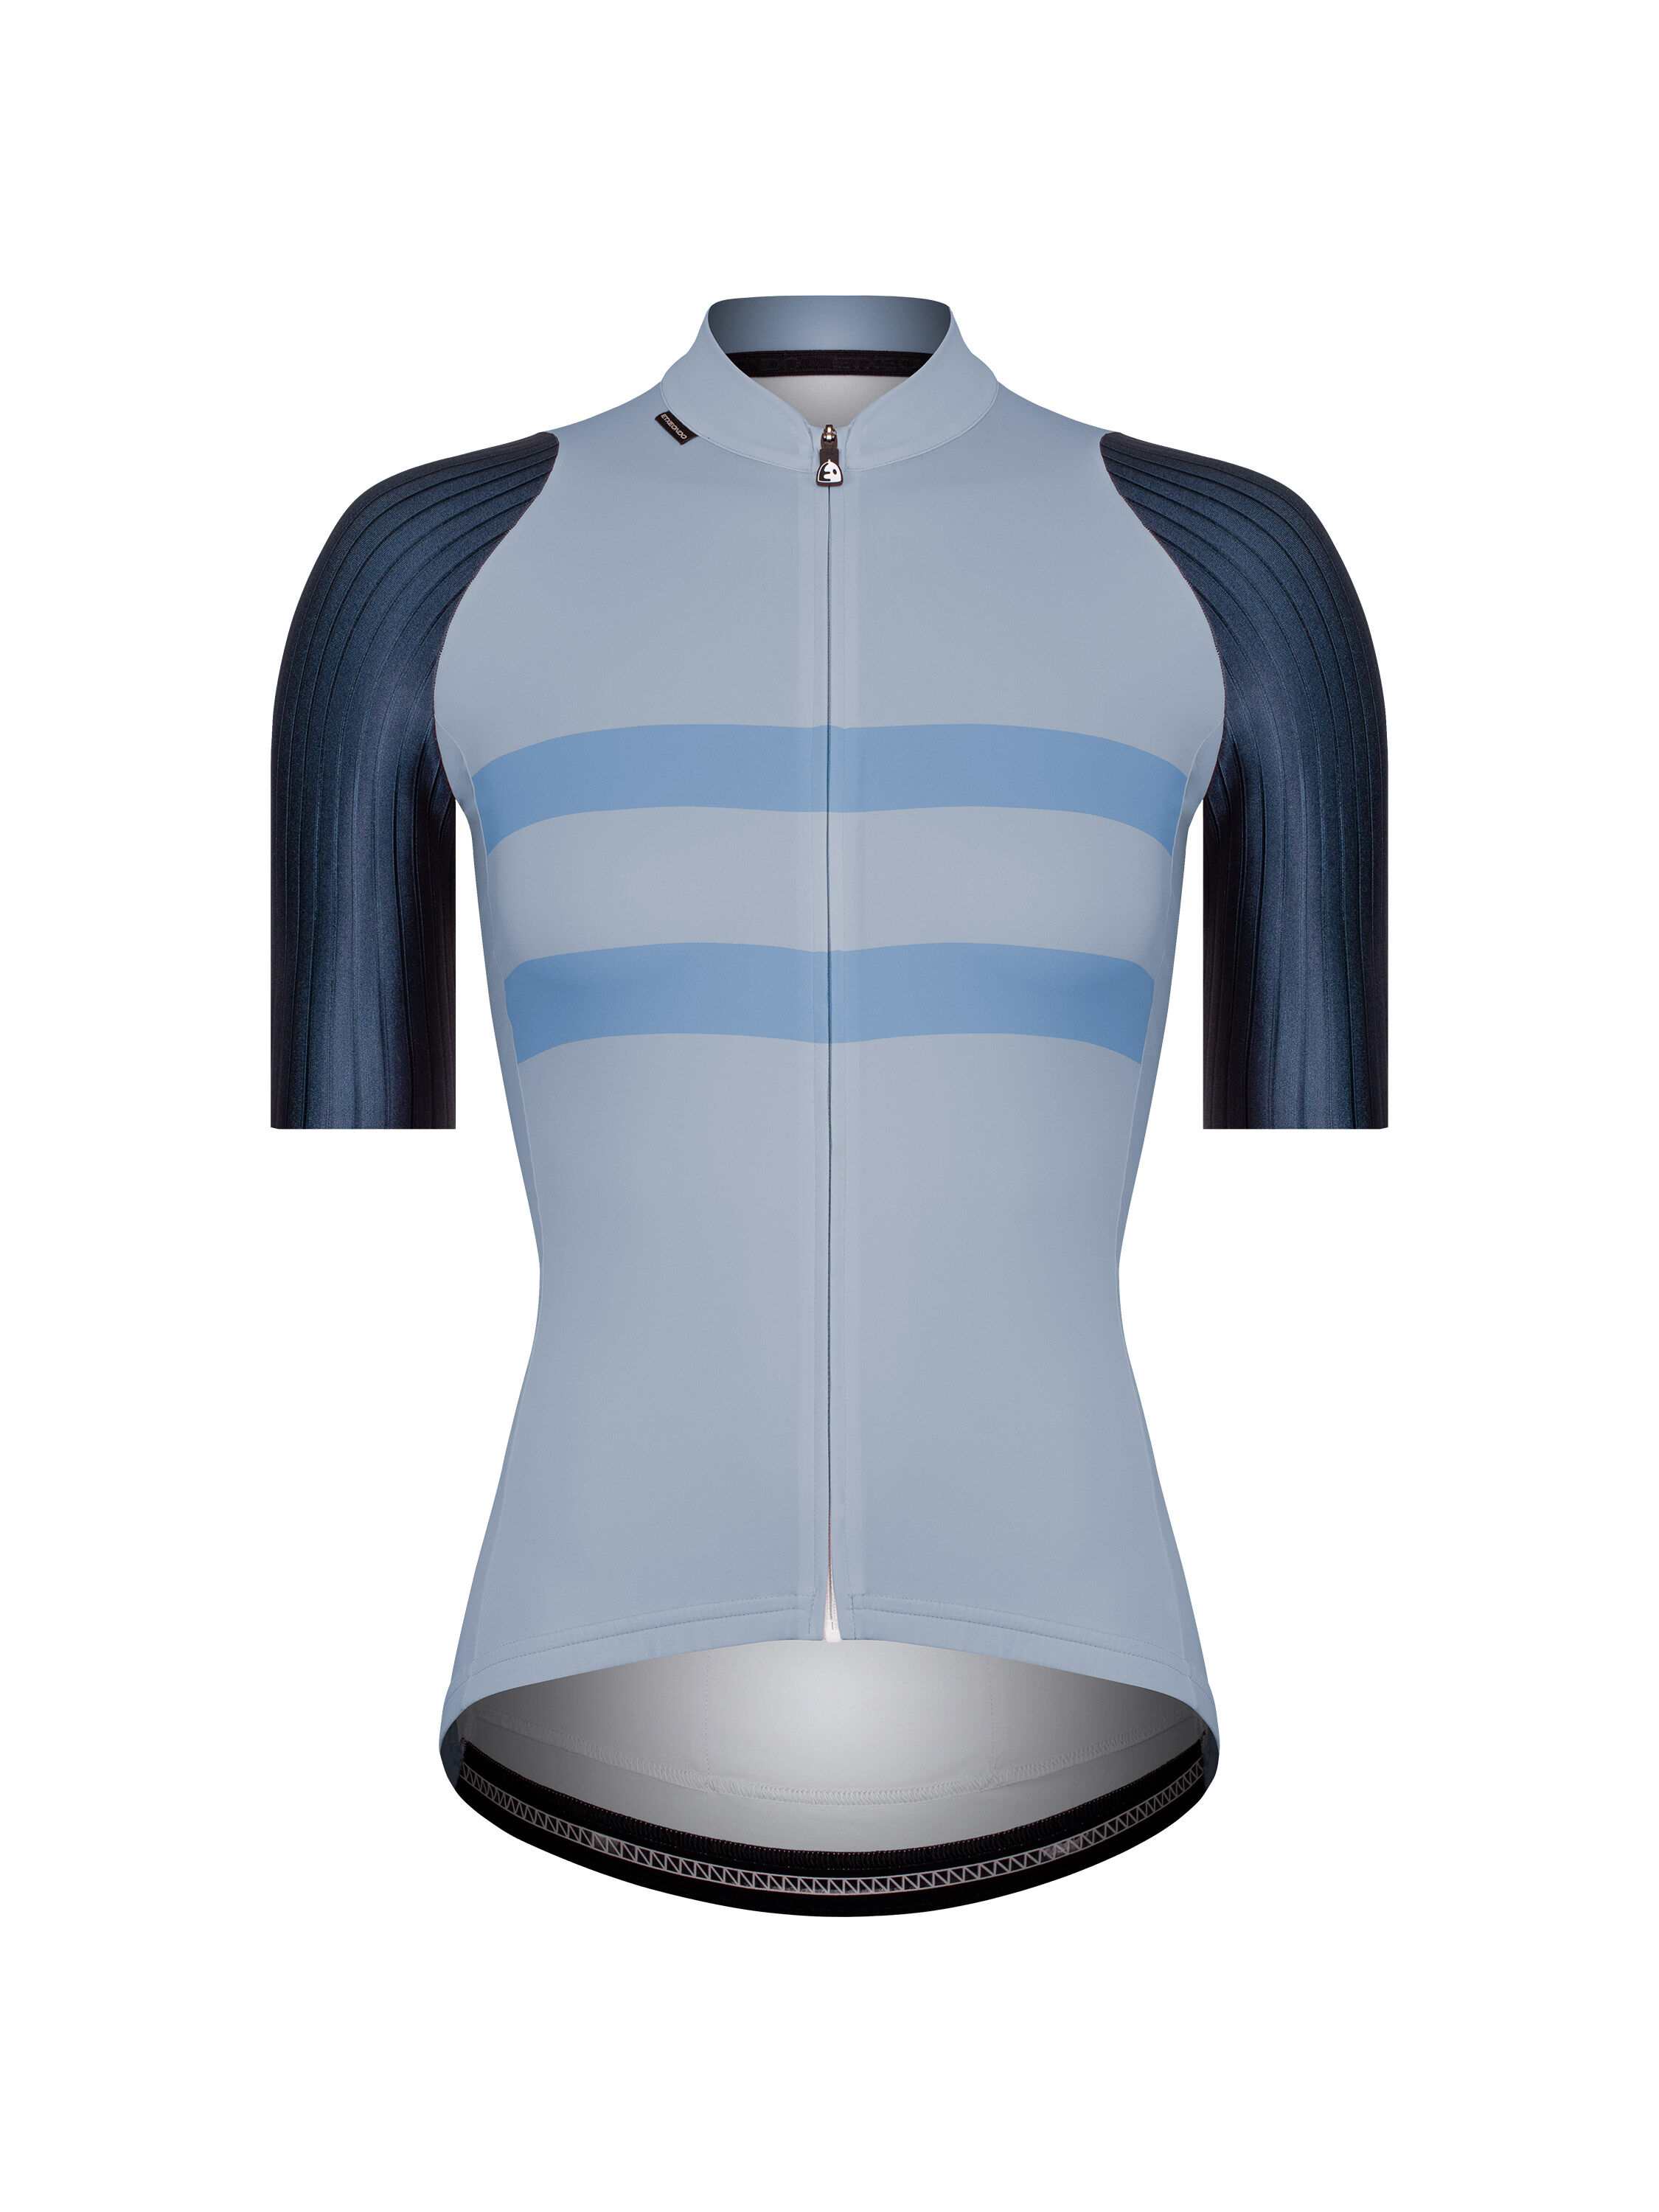 Etxeondo Garaia - Cycling jersey - Women's